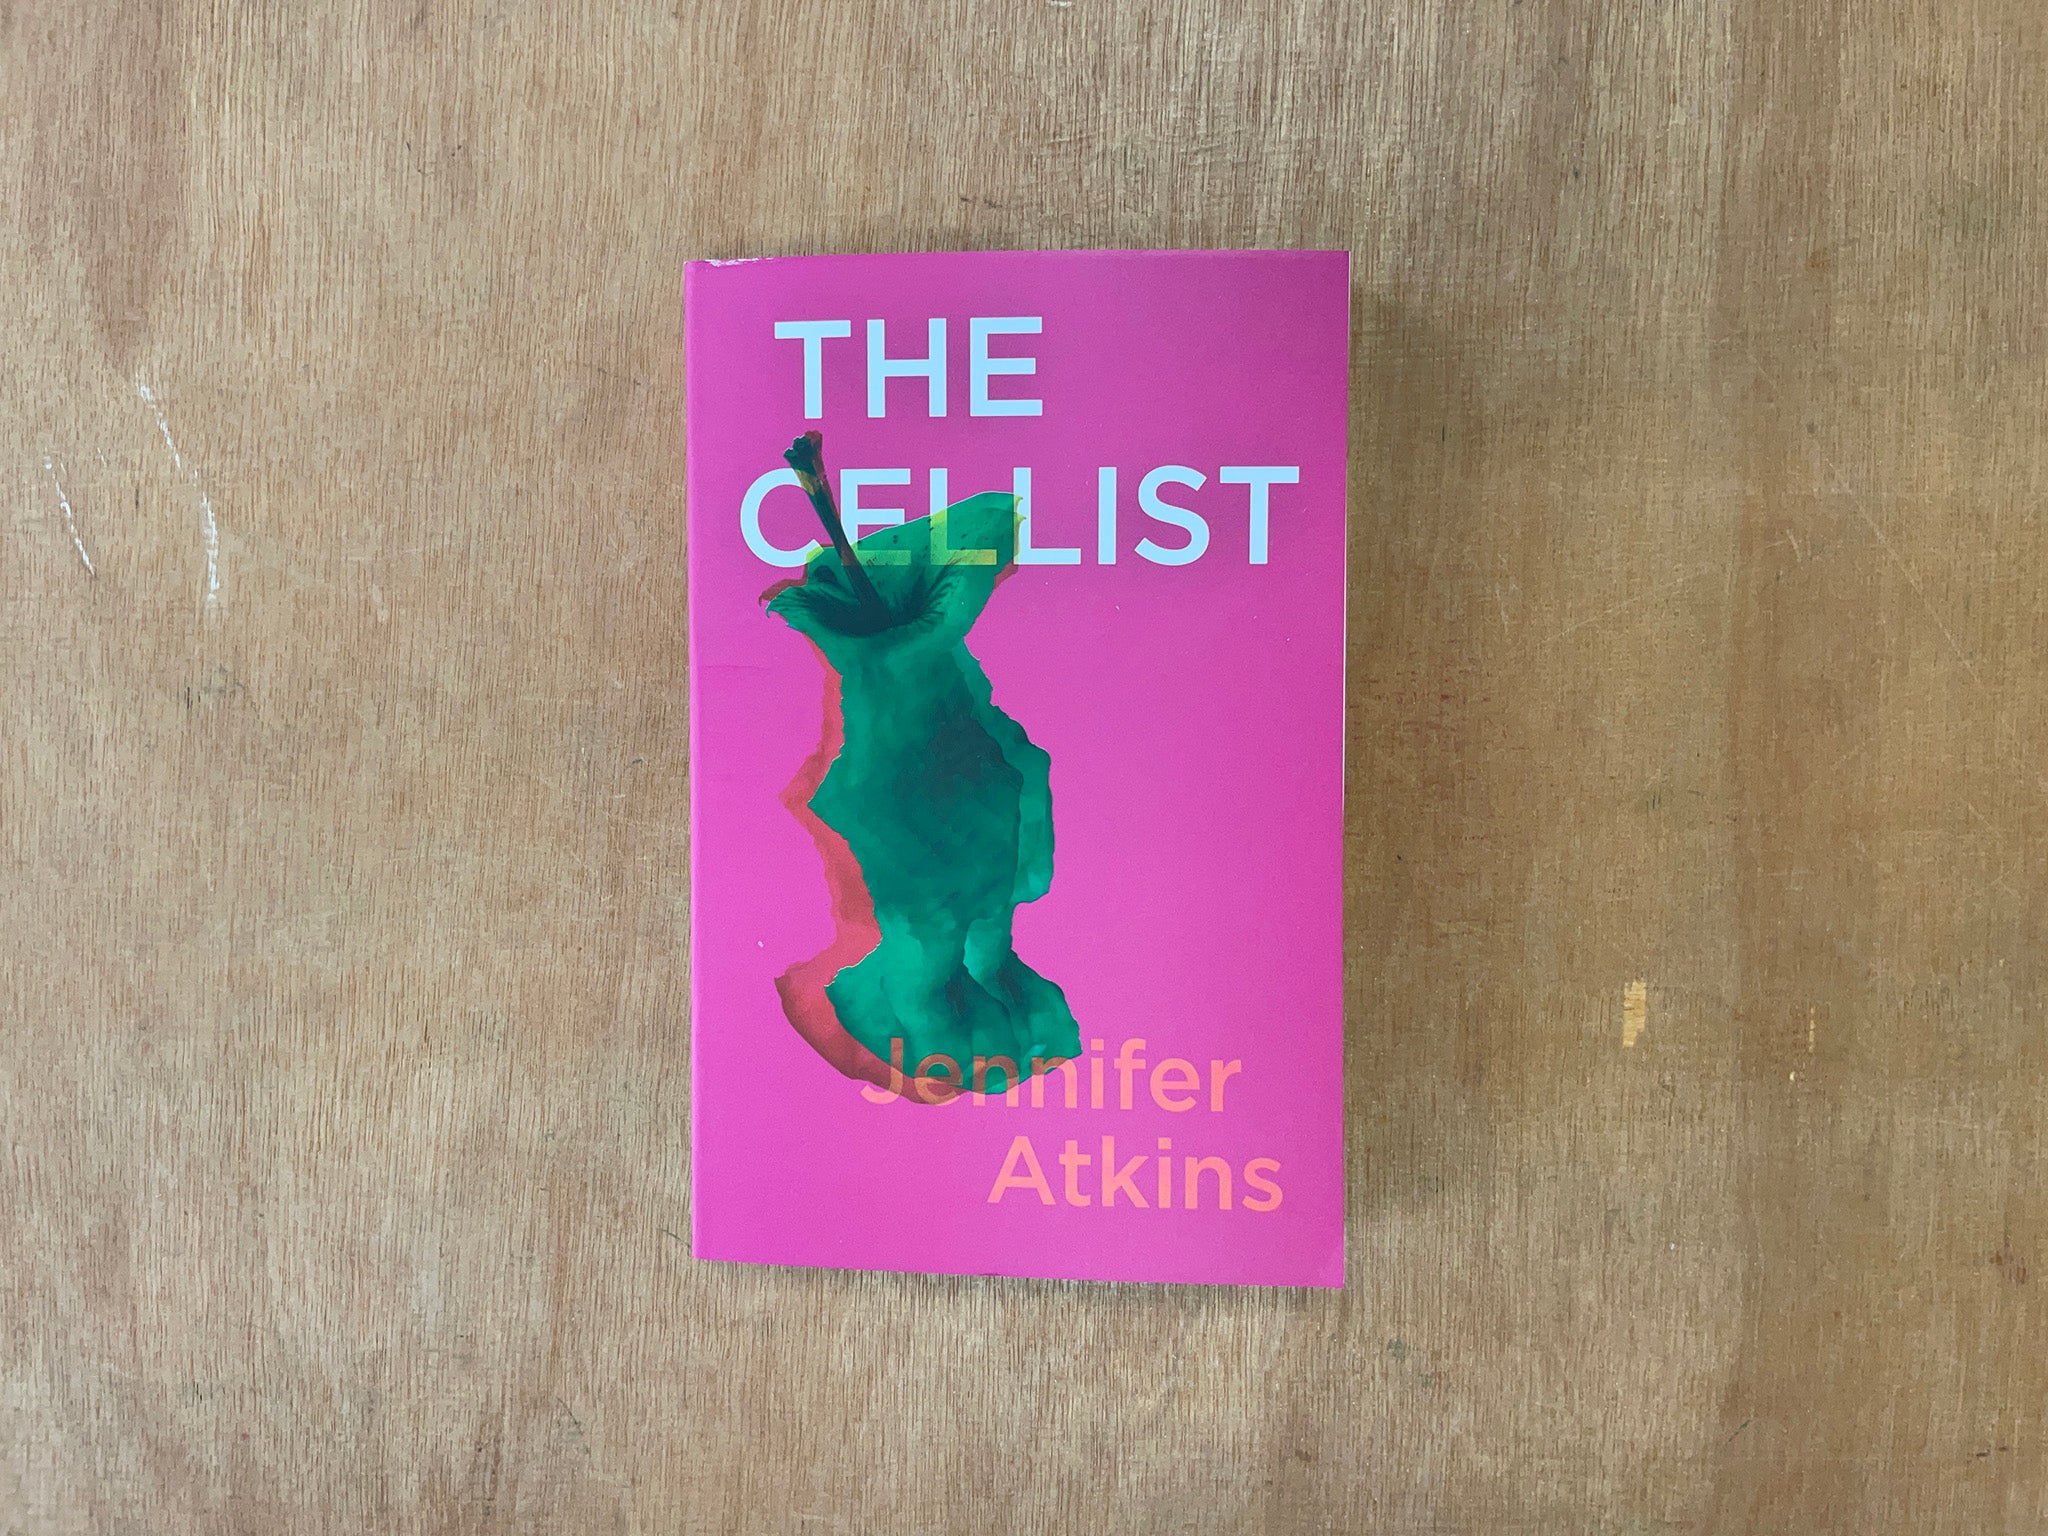 THE CELLIST by Jennifer Atkins